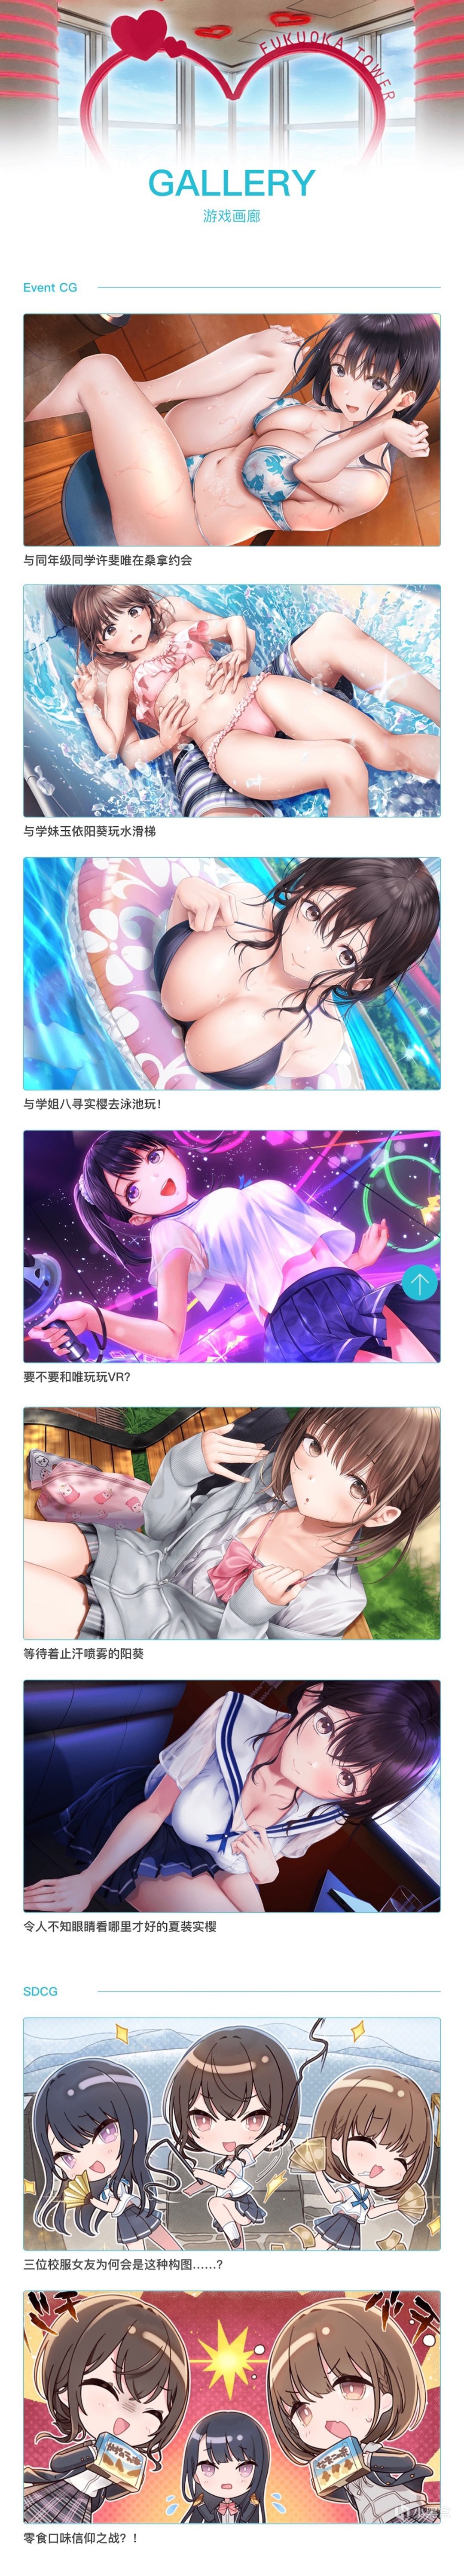 【Gal游戏综合区】HIKARI PLUSE宣布将同步发行全新作品《制服女友》中文版-第3张